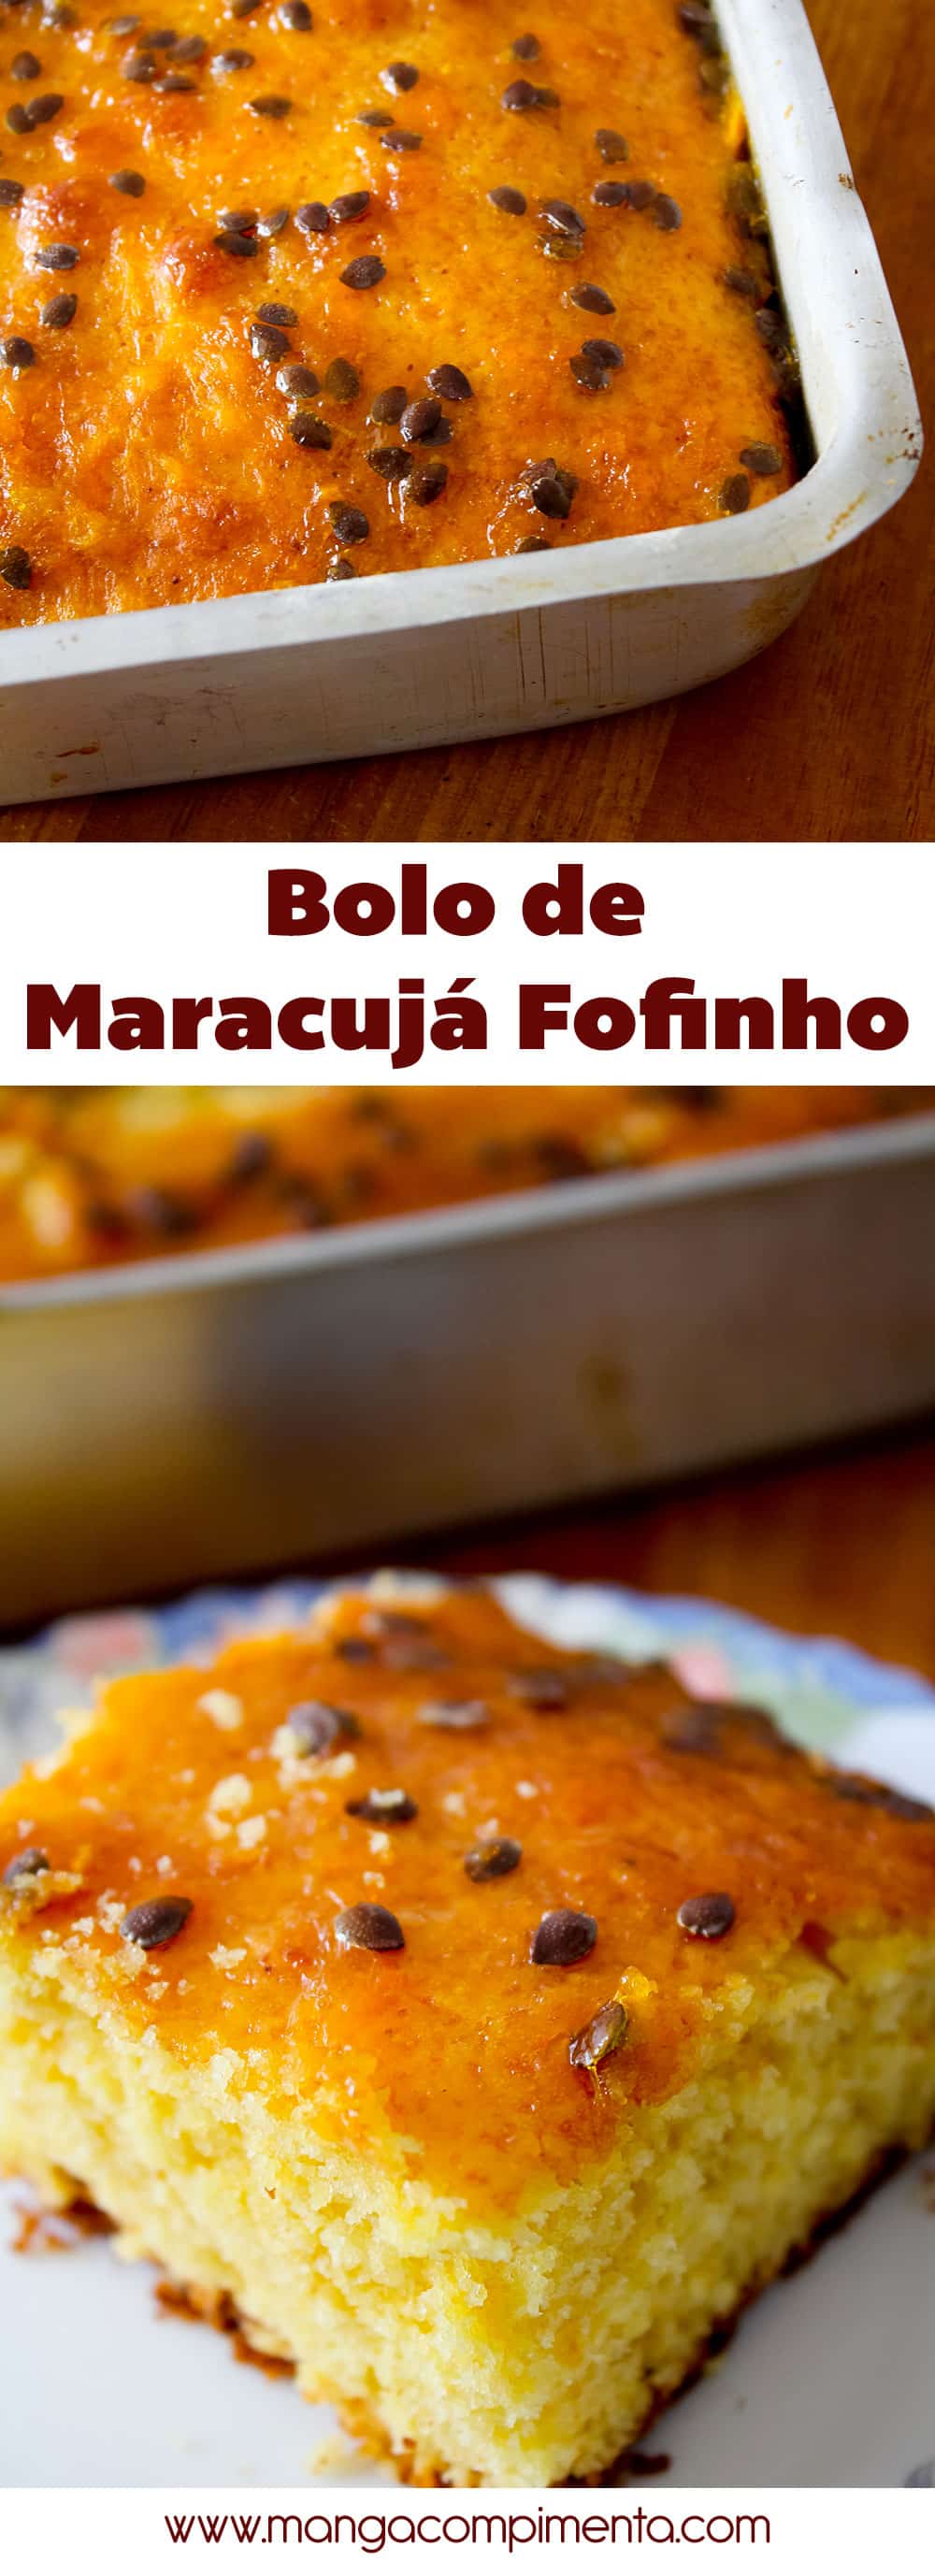 Receita de Bolo de Maracujá fofinho - para alegrar o café da manhã ou para oferecer no lanche da tarde.